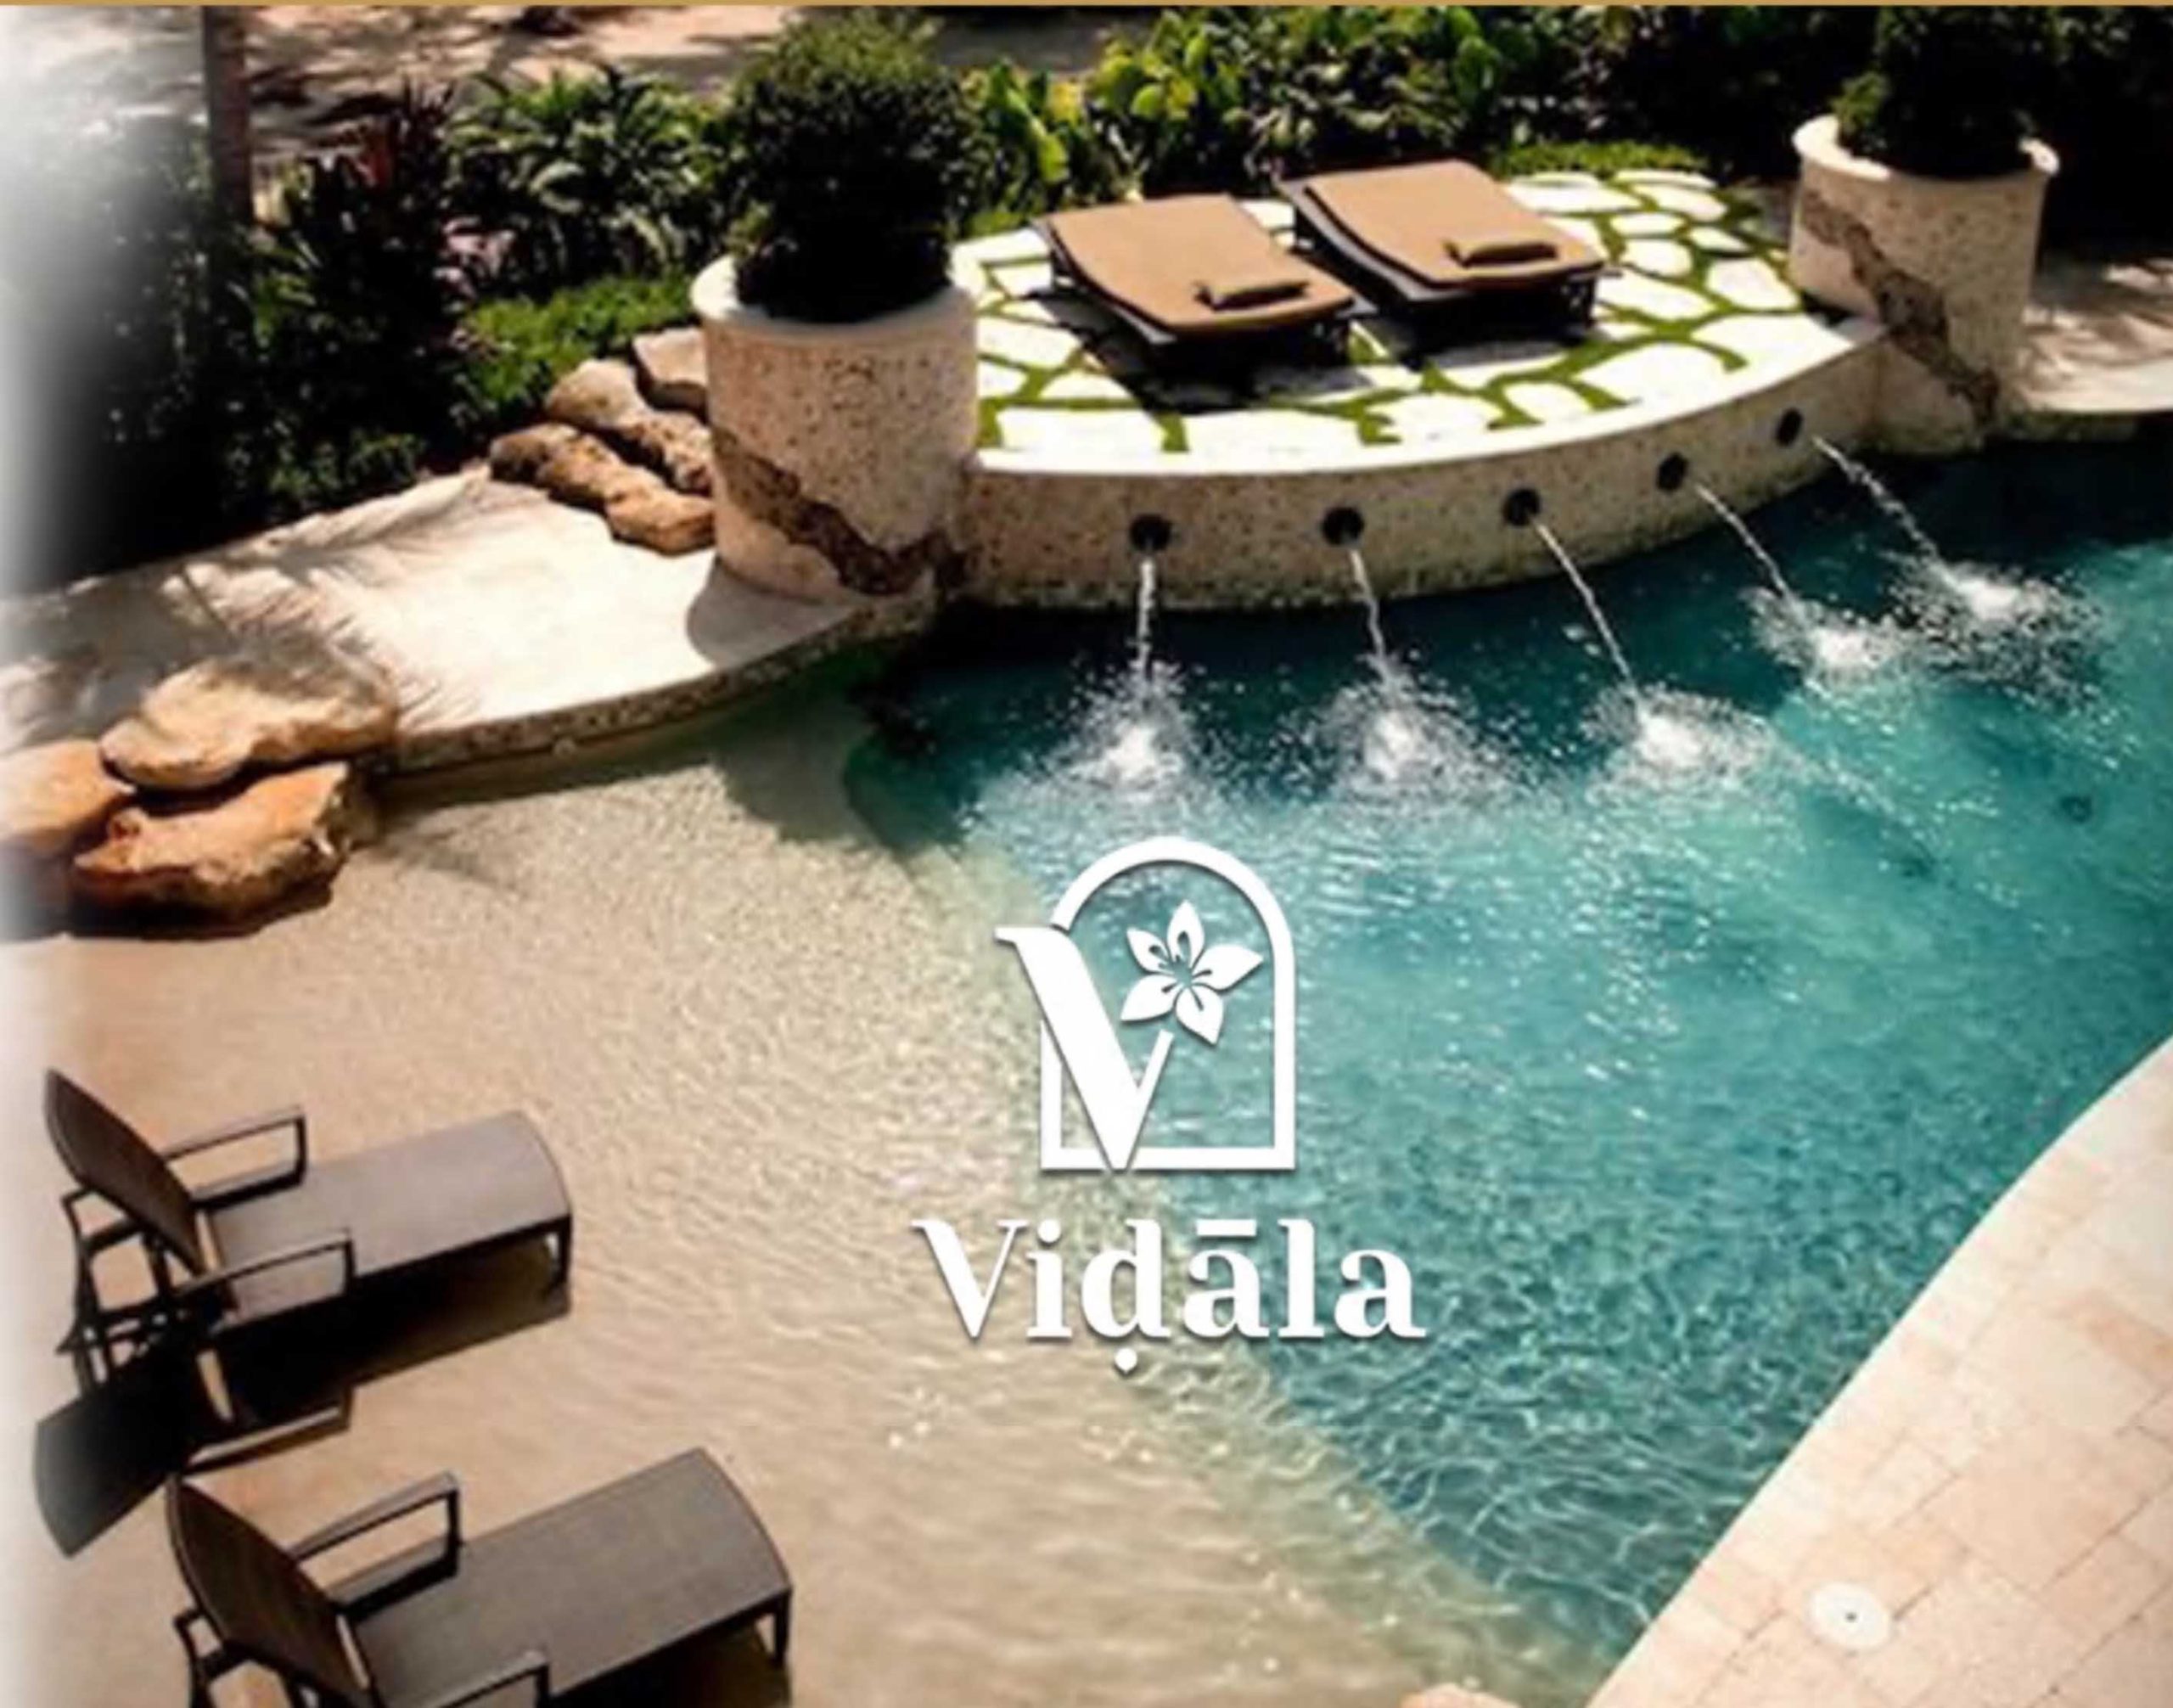 قرية فيدالا الجلالة العين السخنة - Vidala Galala Resort Ain Sokhna